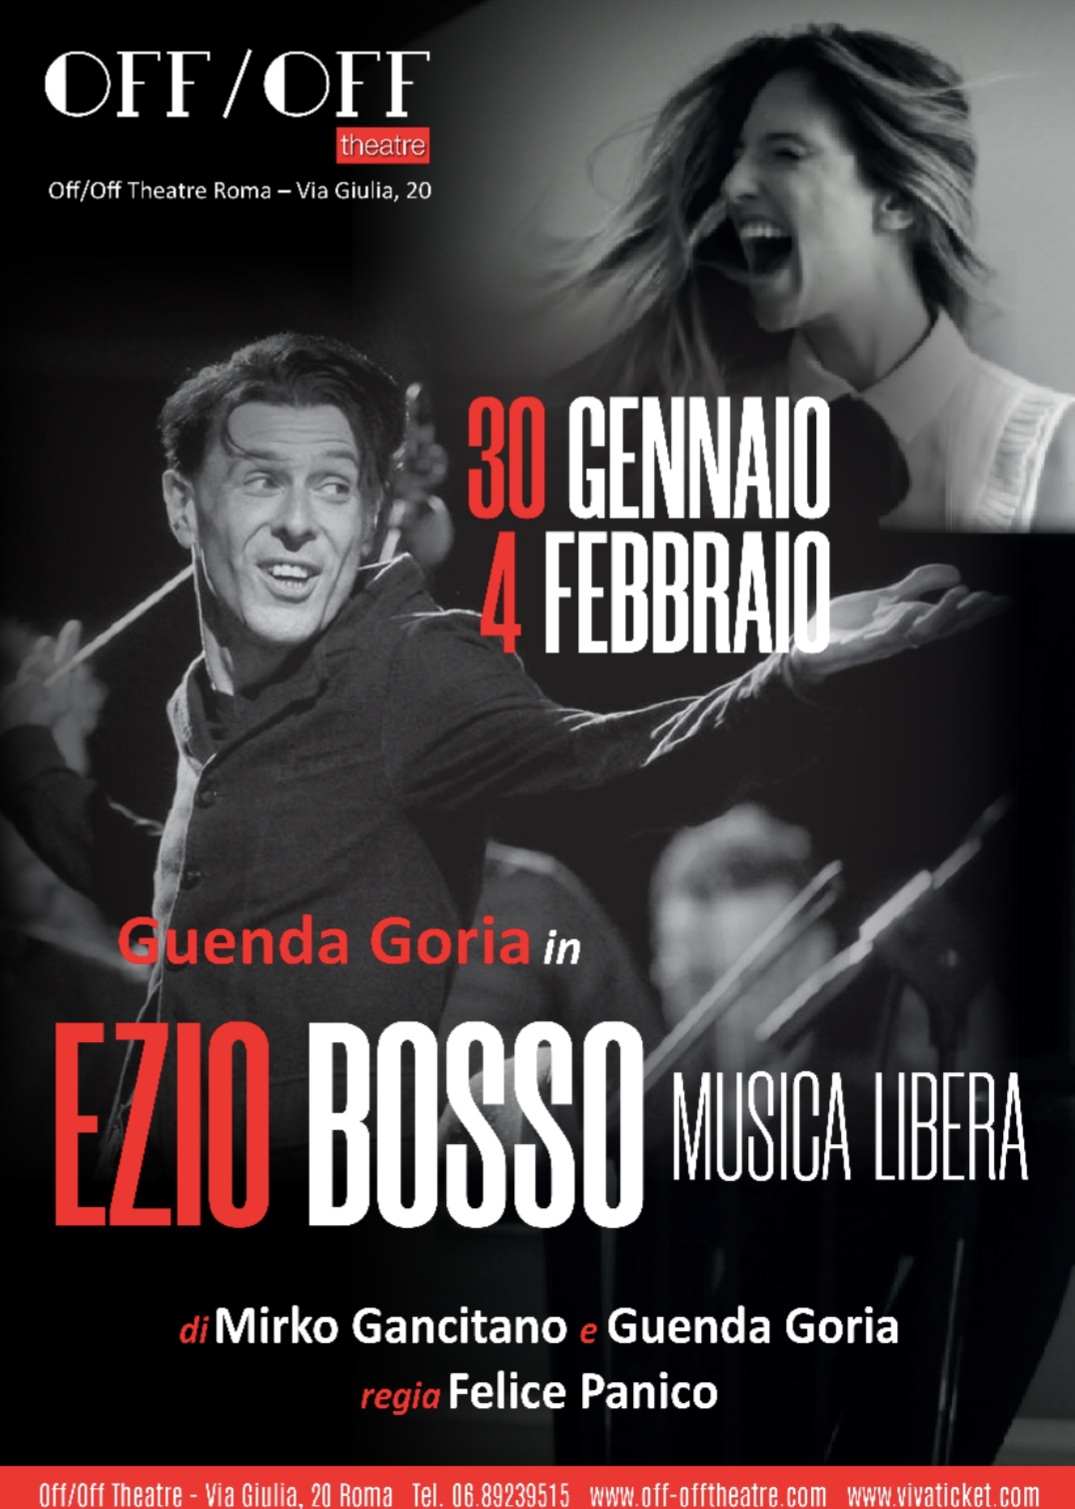 GUENDA GORIA in EZIO BOSSO MUSICA LIBERA